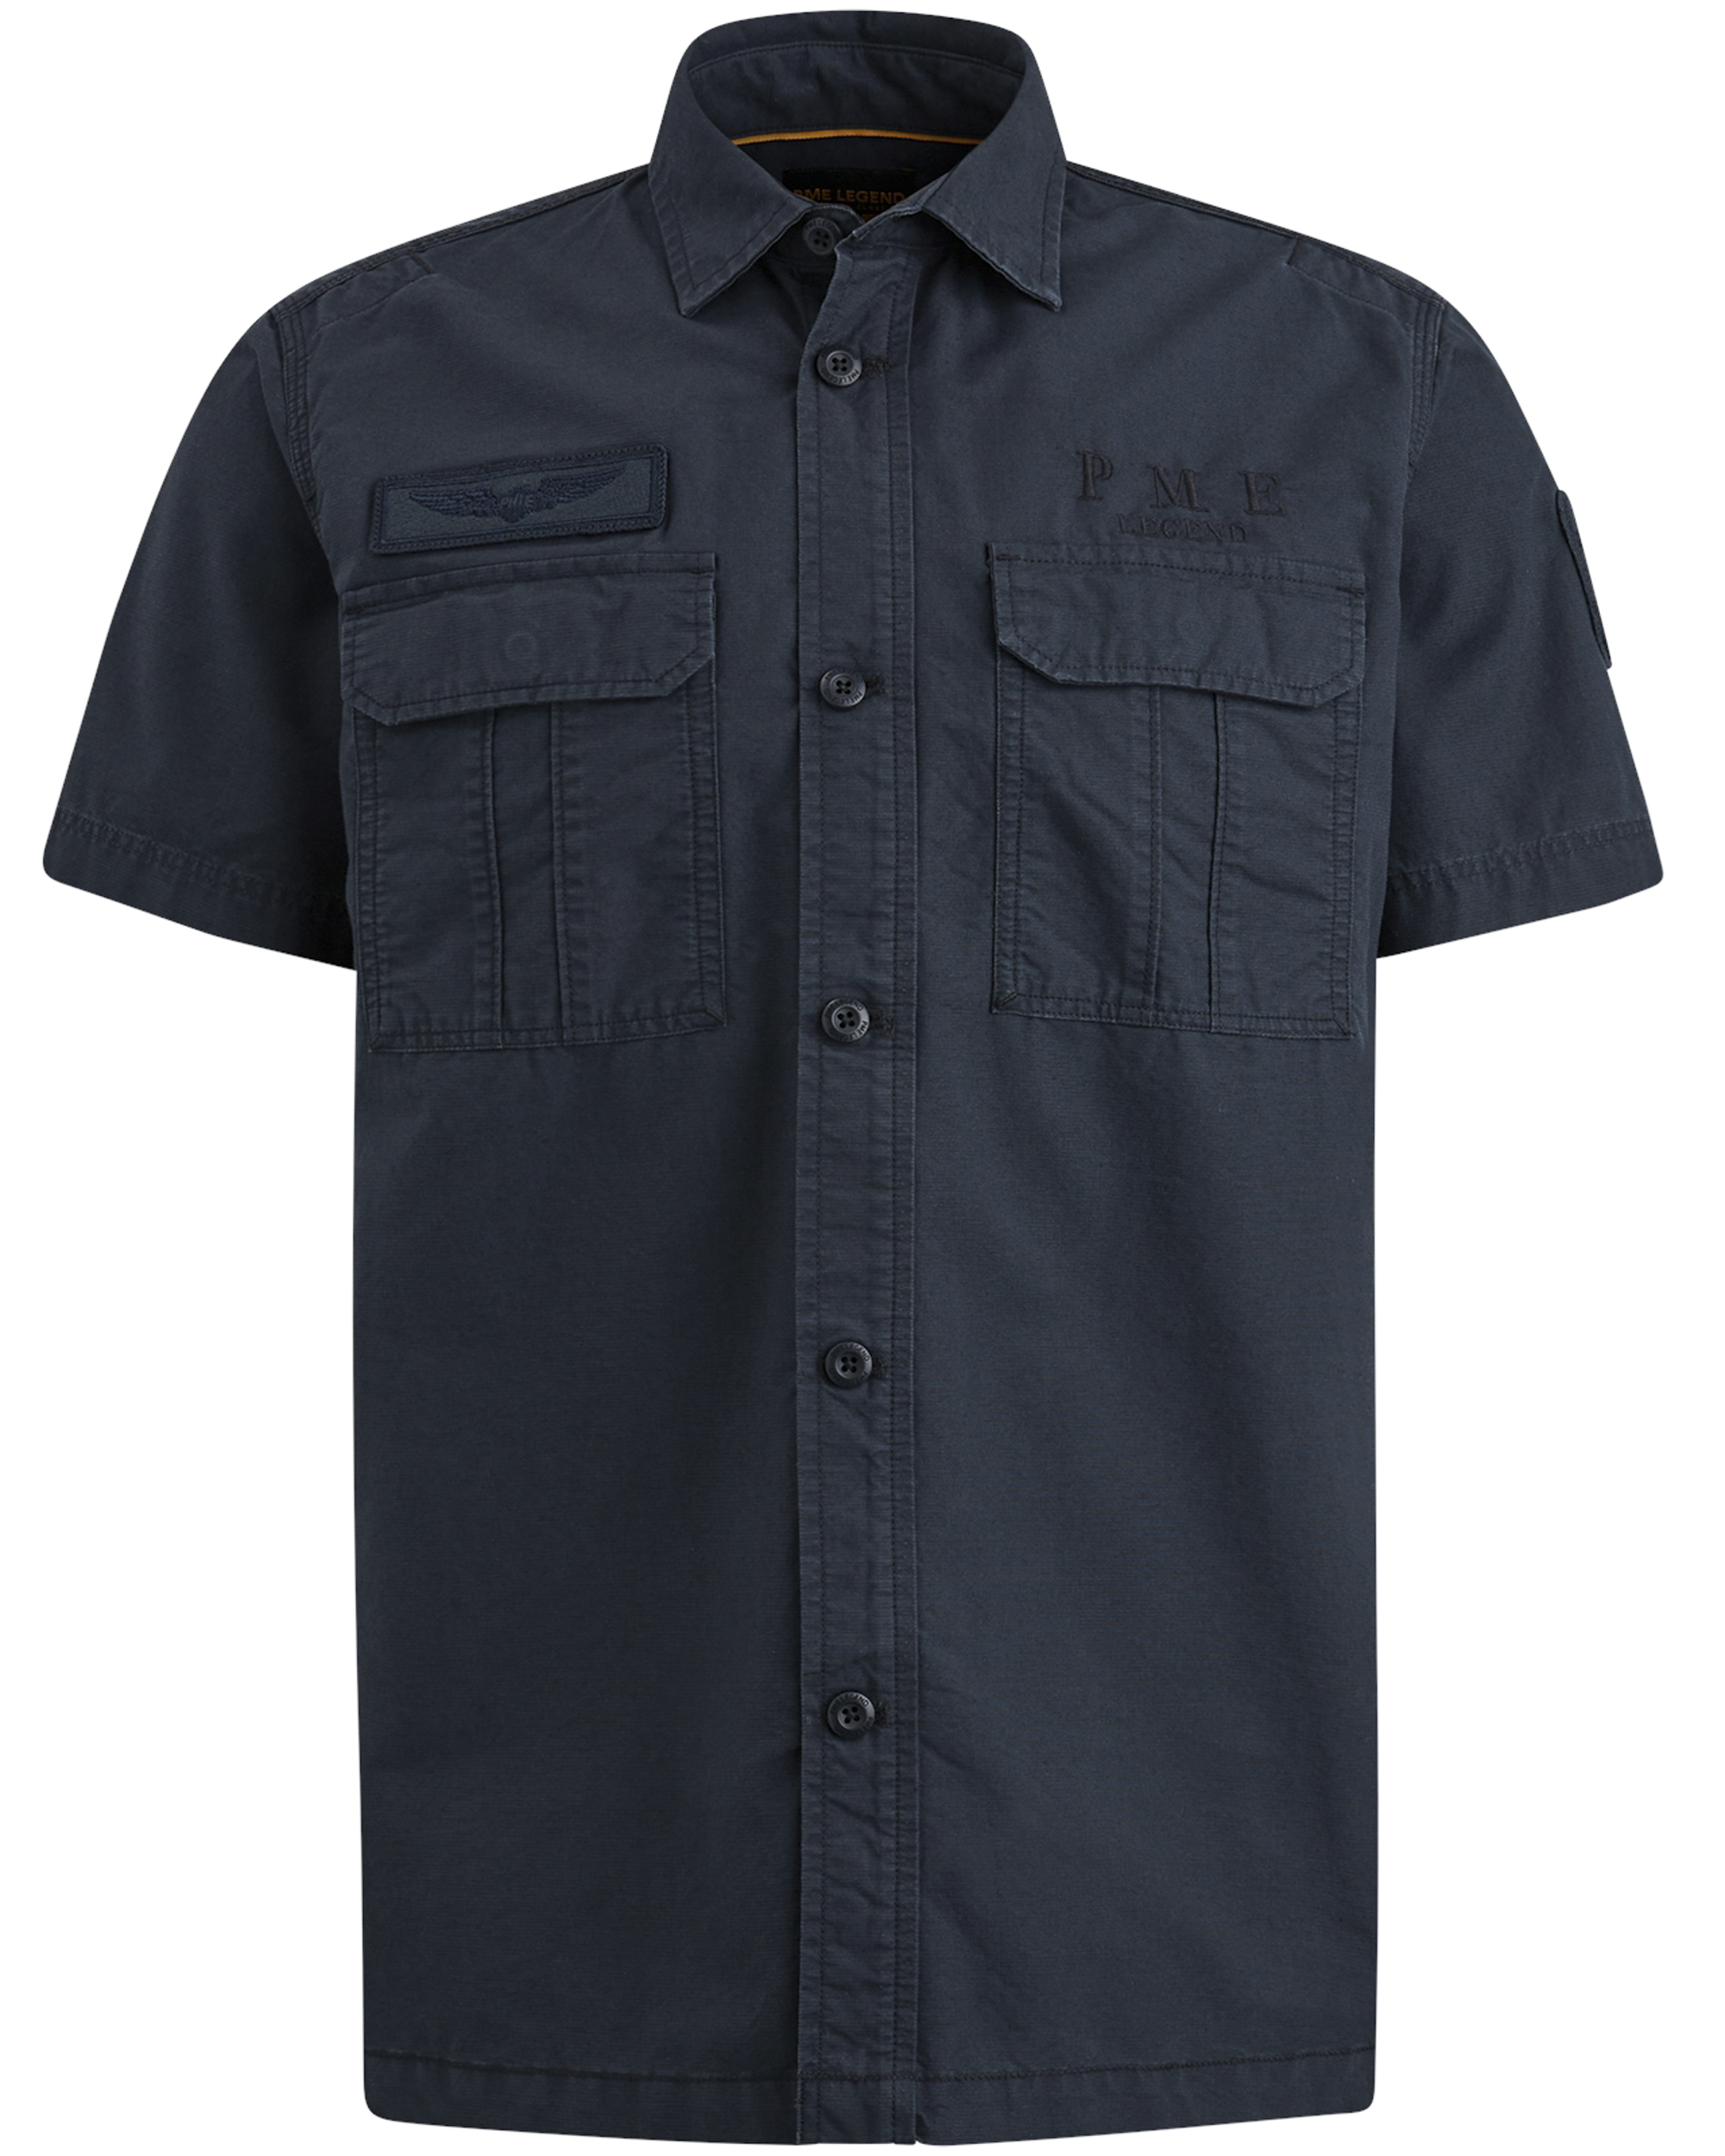 PME LEGEND T-Shirt Short Sleeve Shirt Ctn ottoman